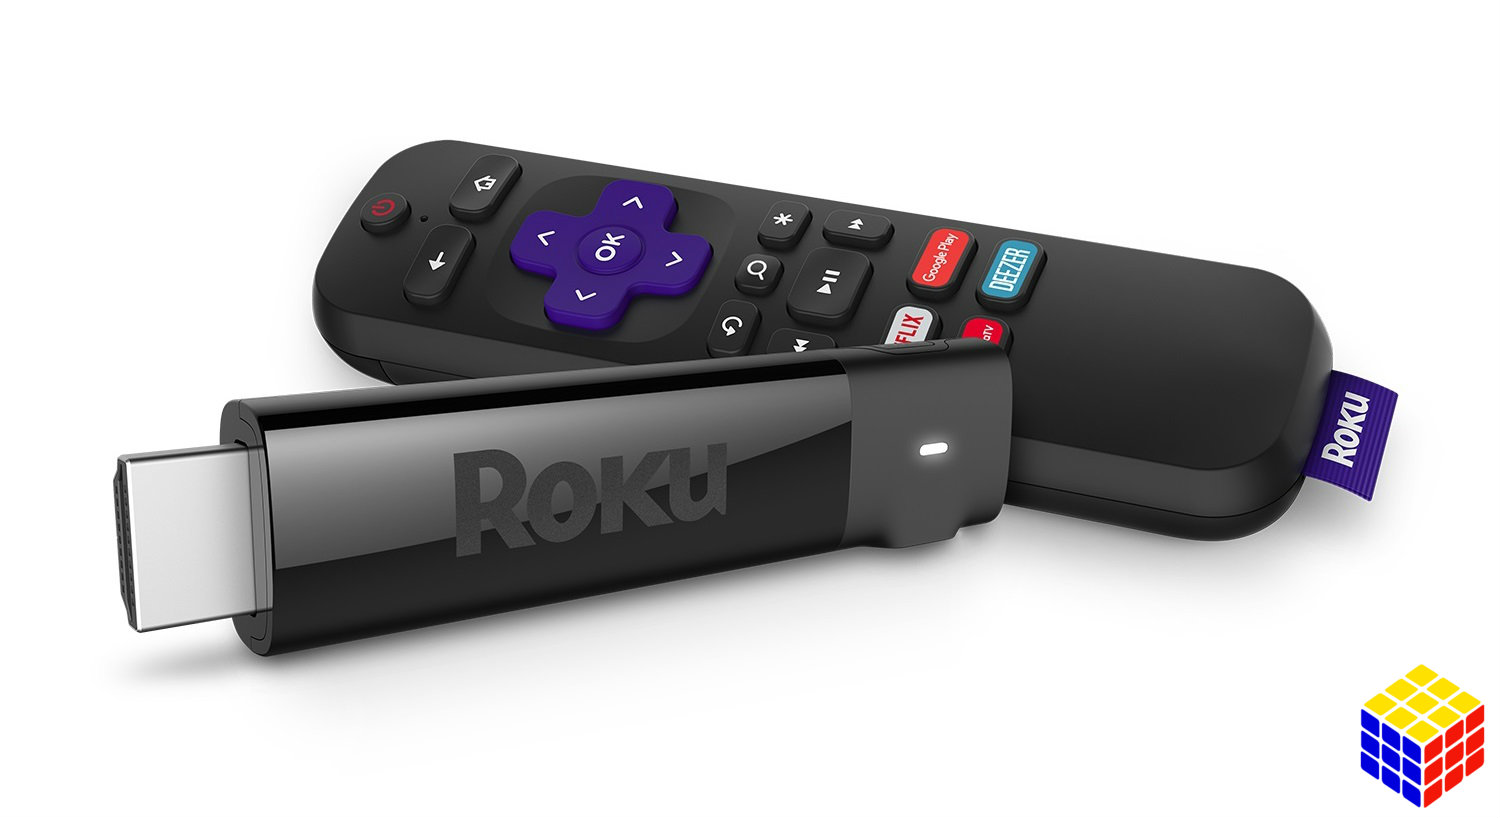 Roku Streaming Stick+: videos en 4K y HDR en la palma de tu mano